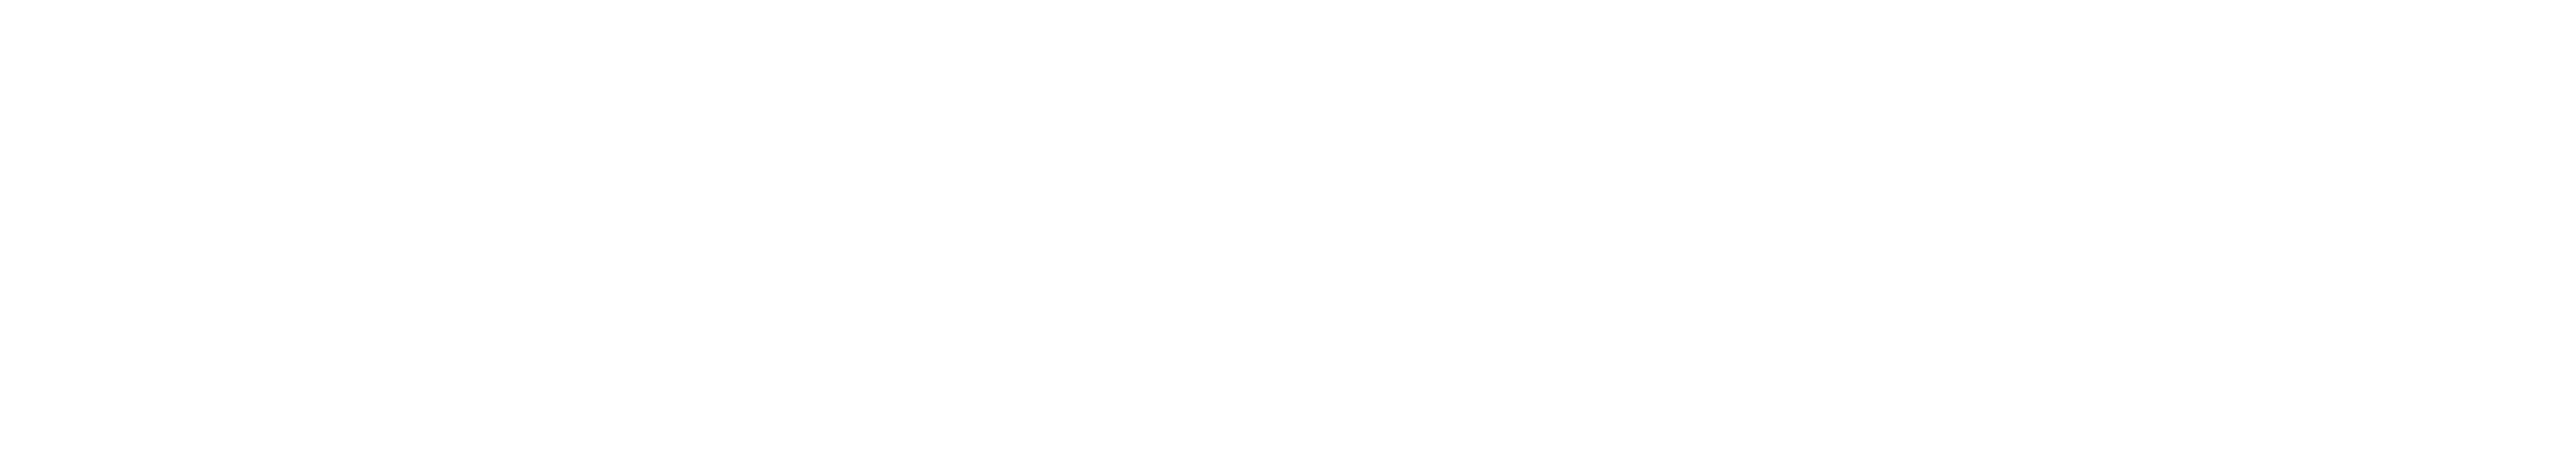 VHLF logo